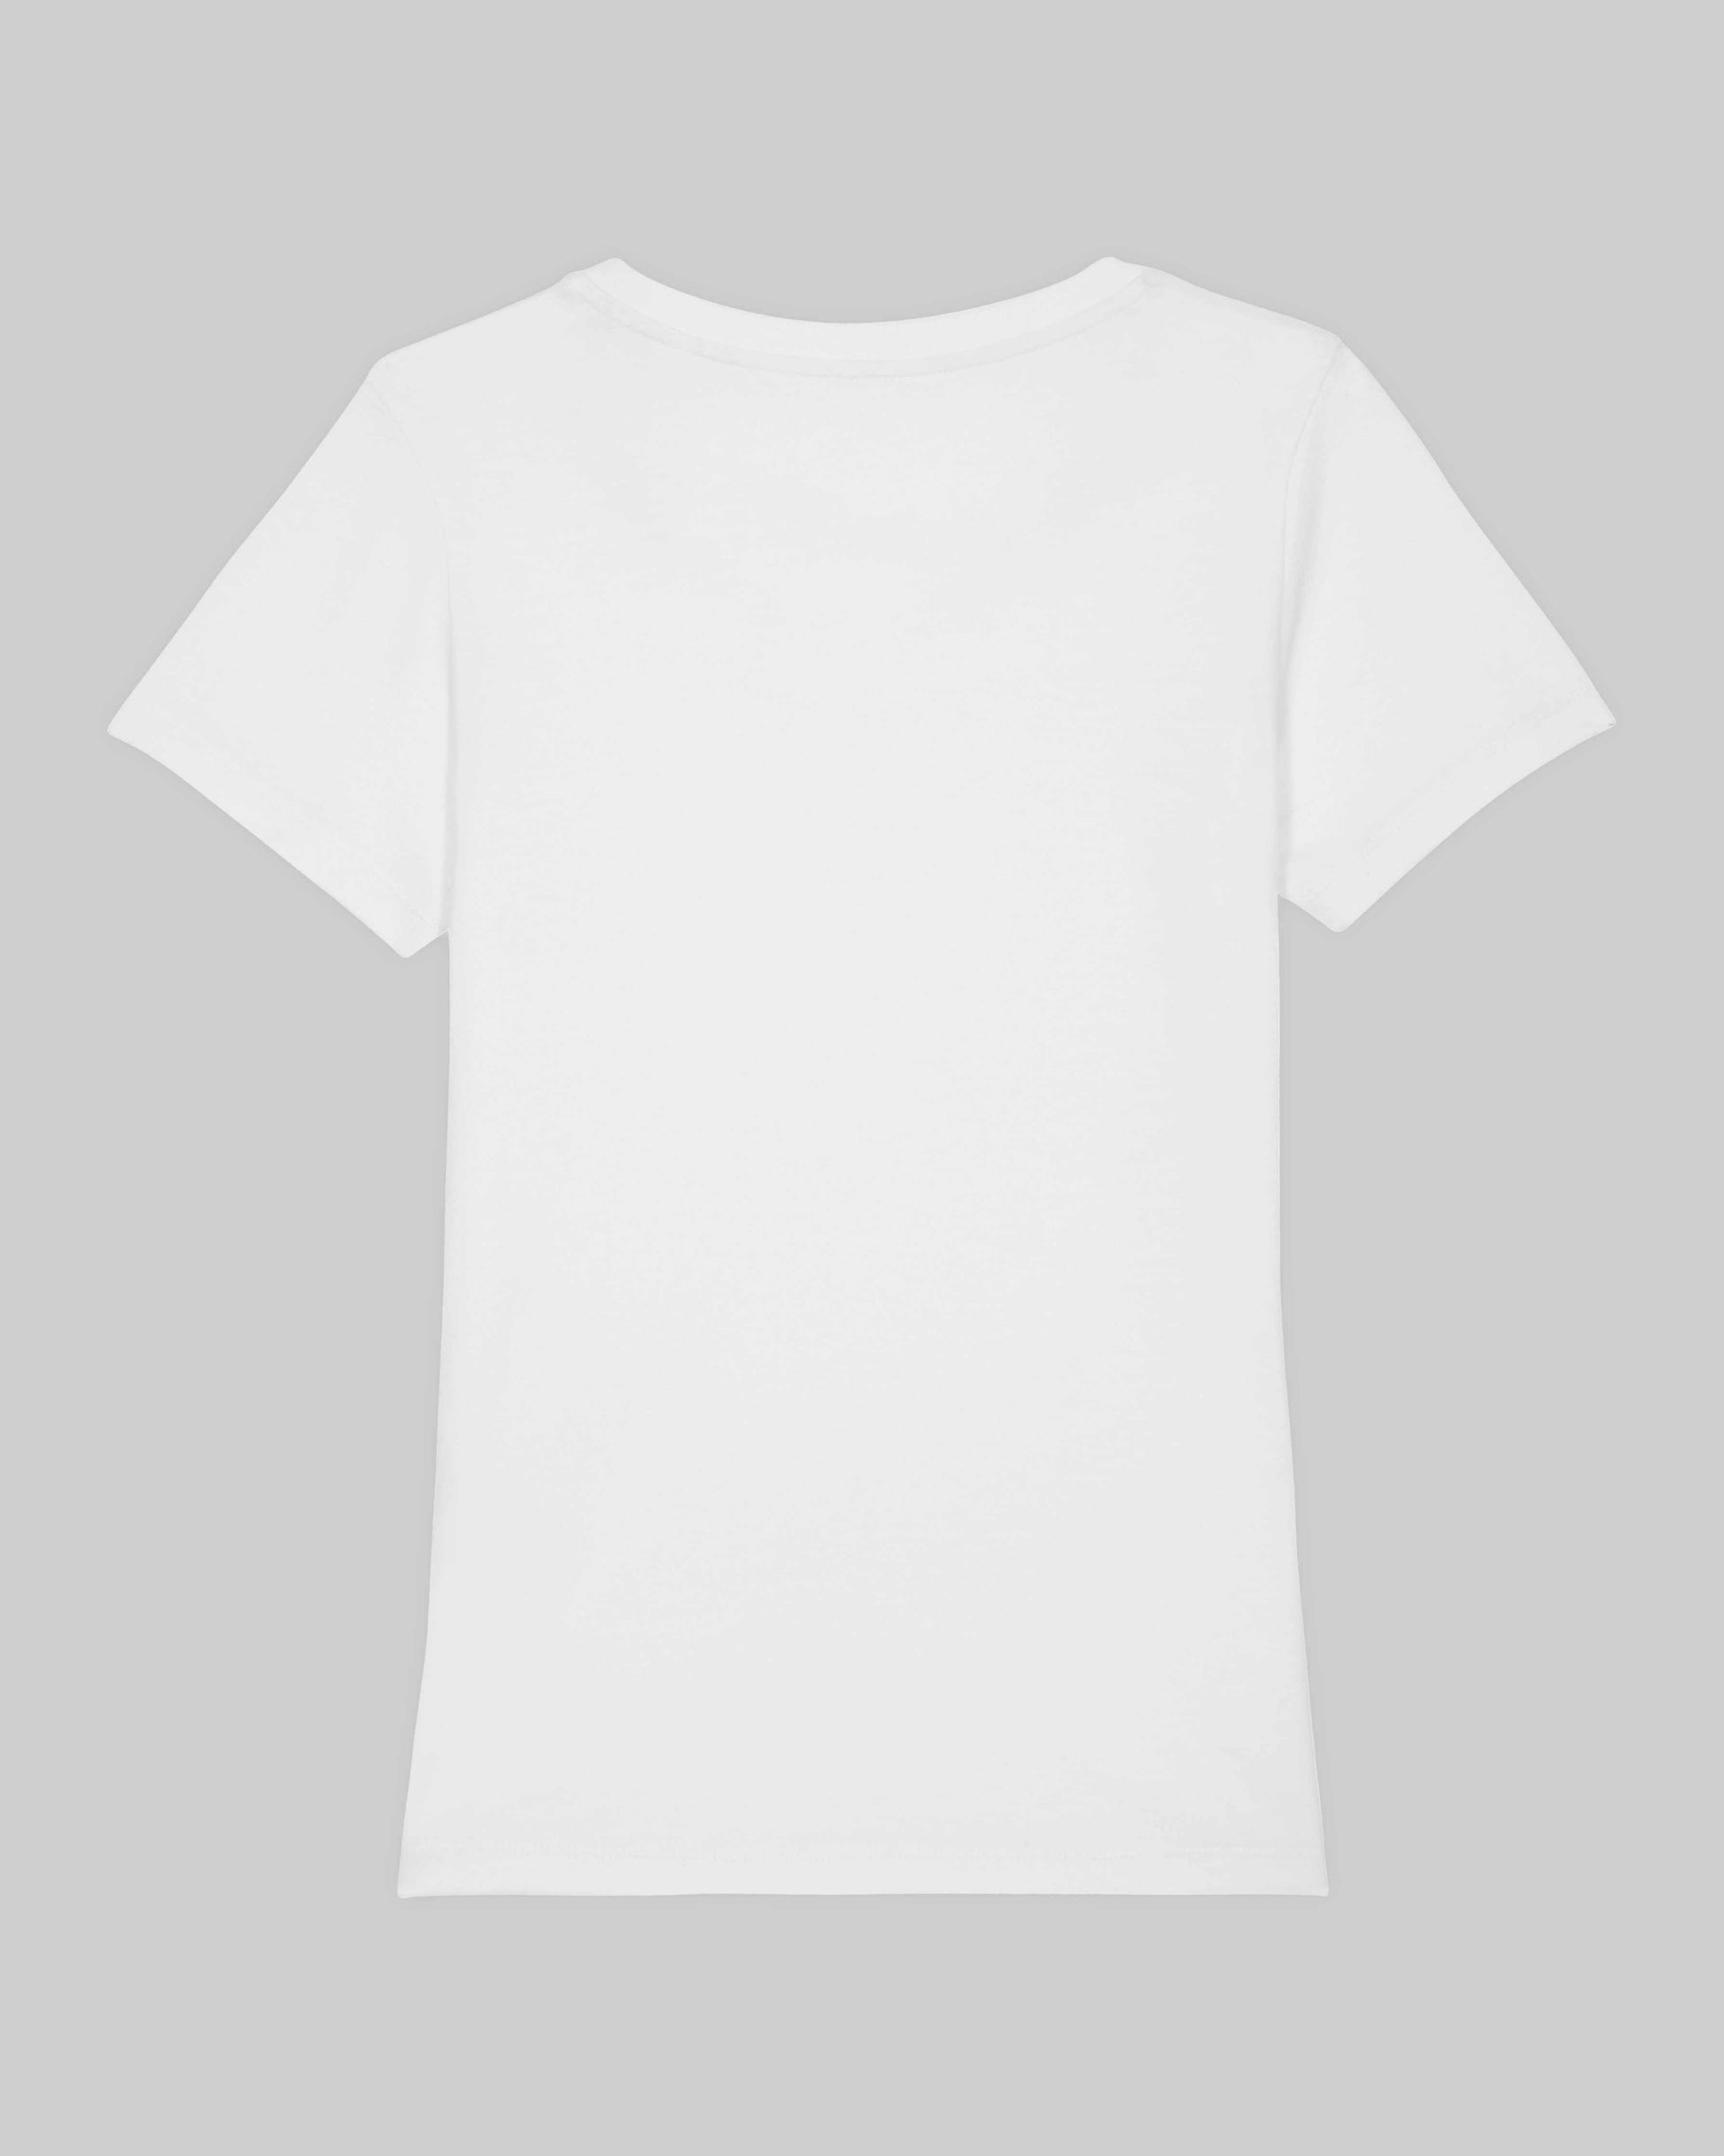 EINHORST® Organic Shirt tailliert in "Weiß" mit dem Motiv "queer Regenbogen" in der Kombination schwarzer Regenbogen mit bunter Schrift, Bild von Shirt von hinten